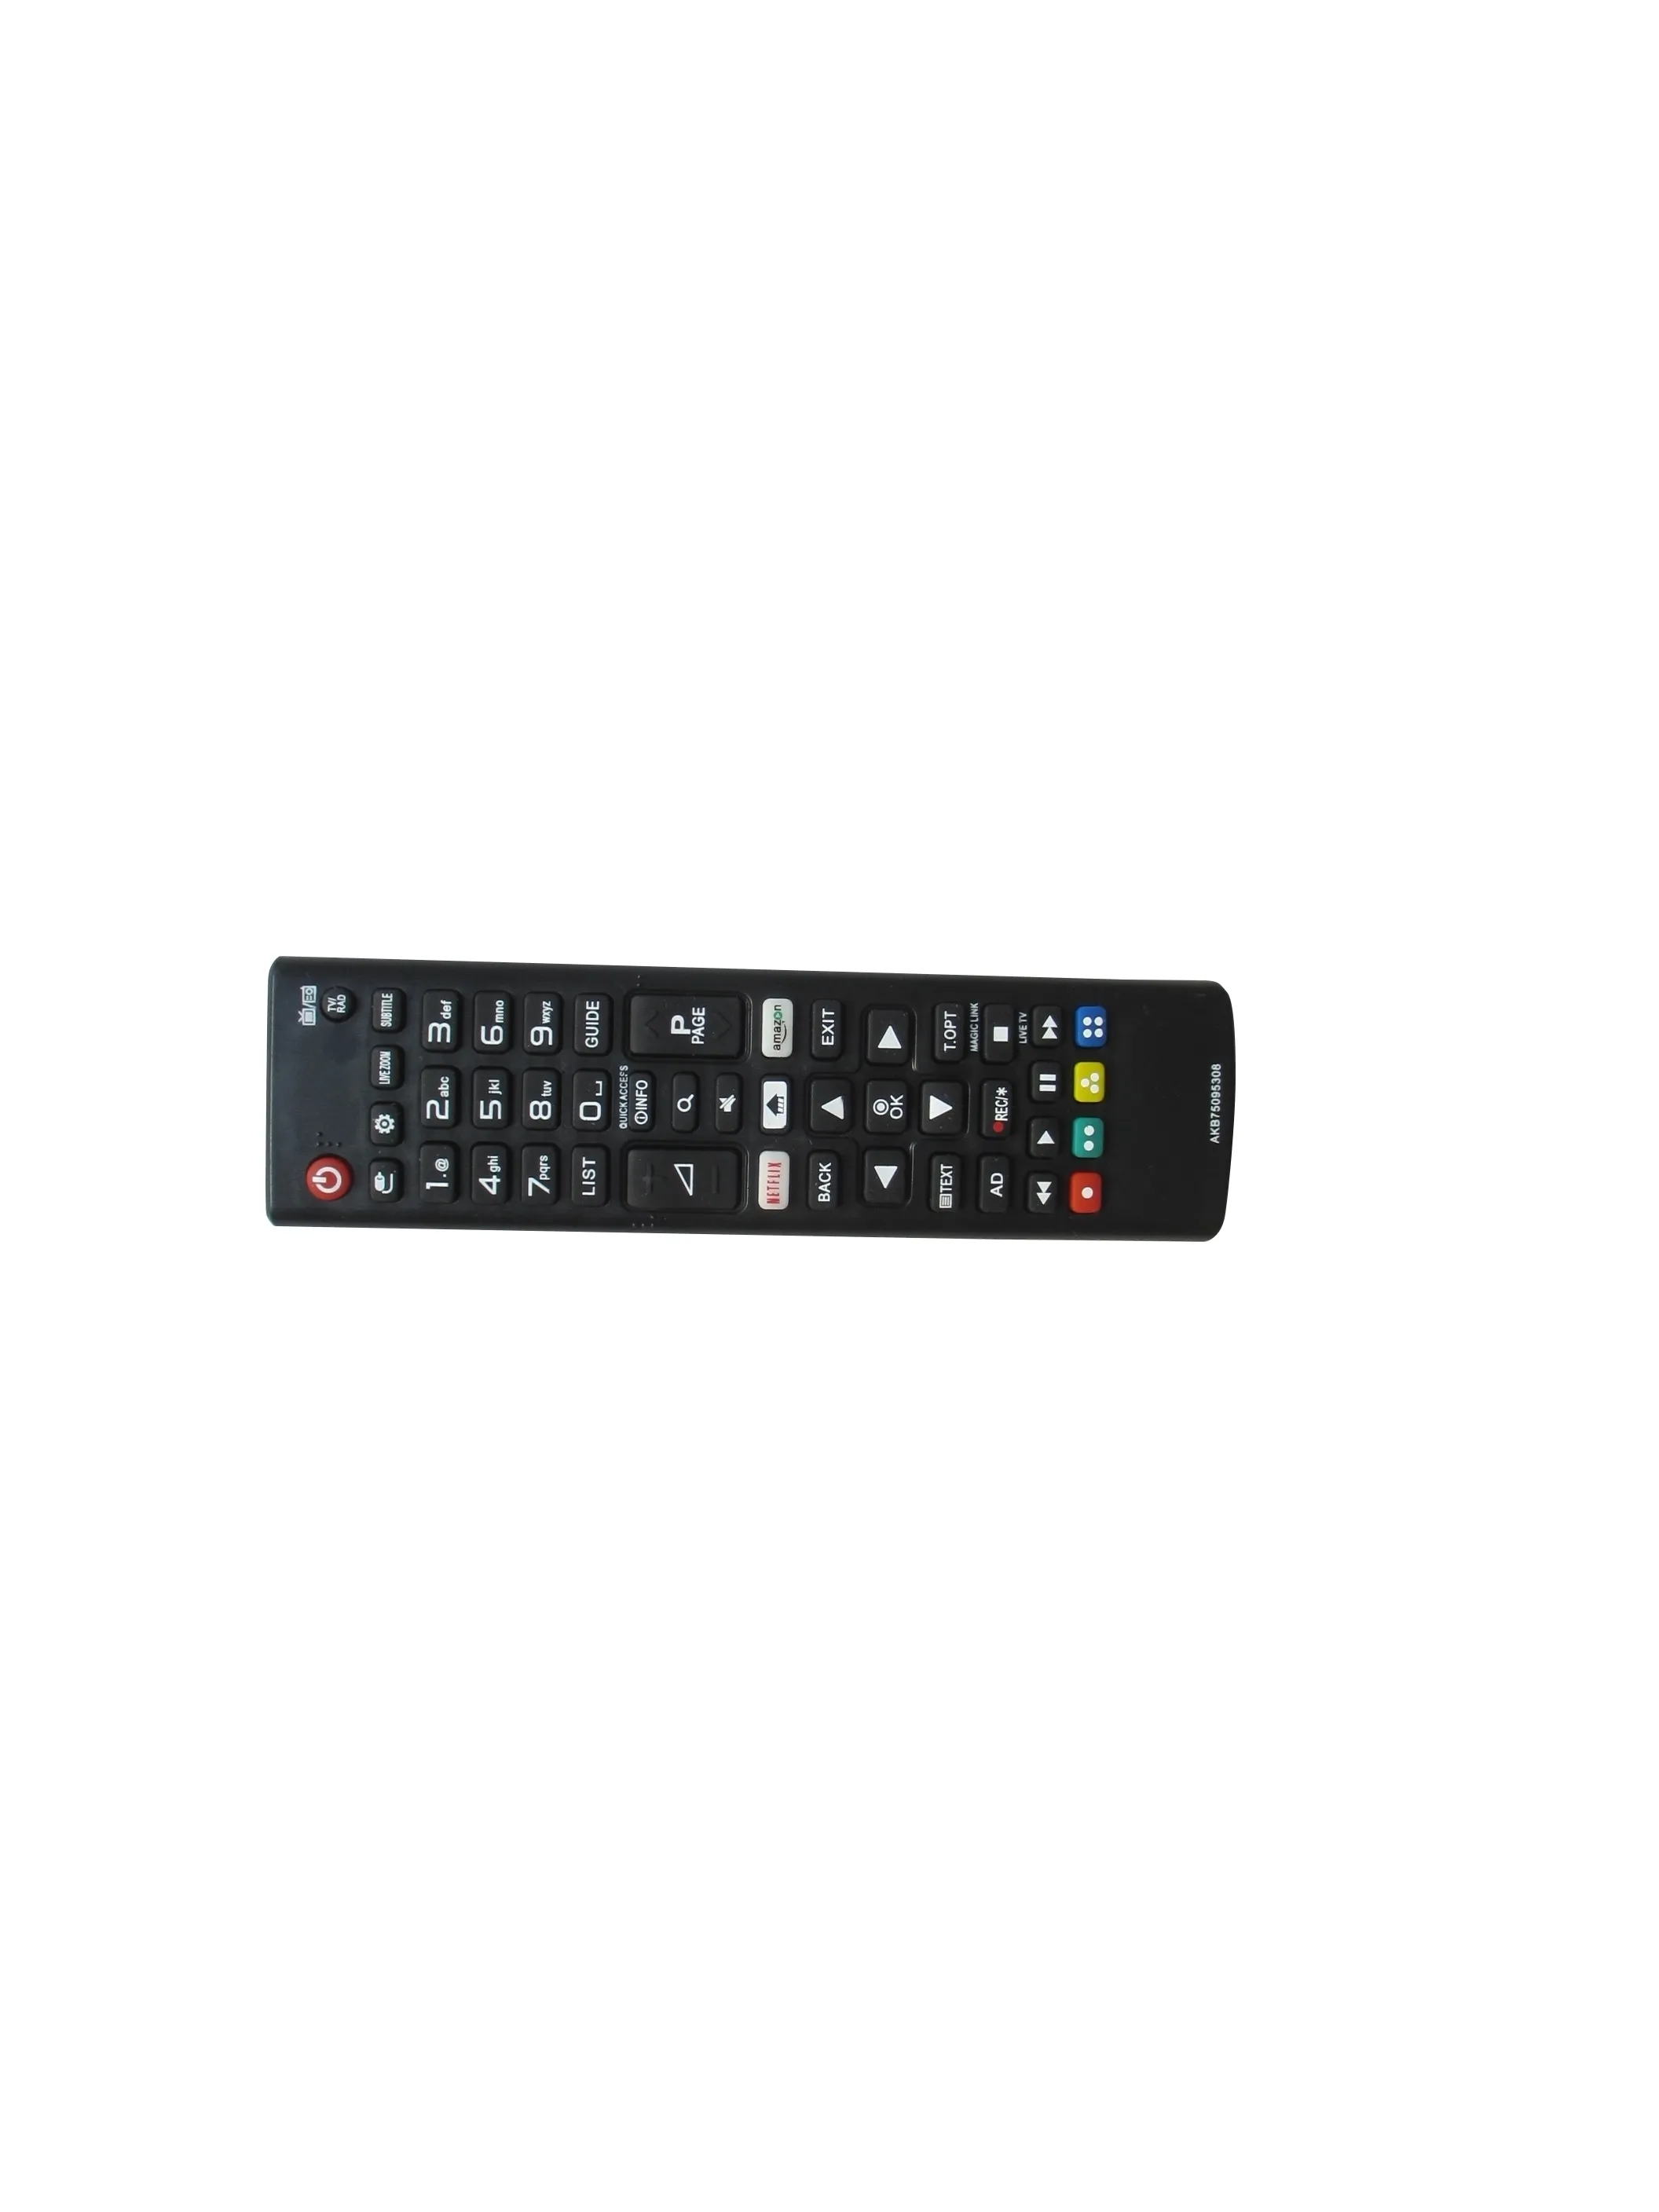 Remoto Control per Soniq W65UV40A 4K Ultra HD UHD Webos Smart HDTV TV